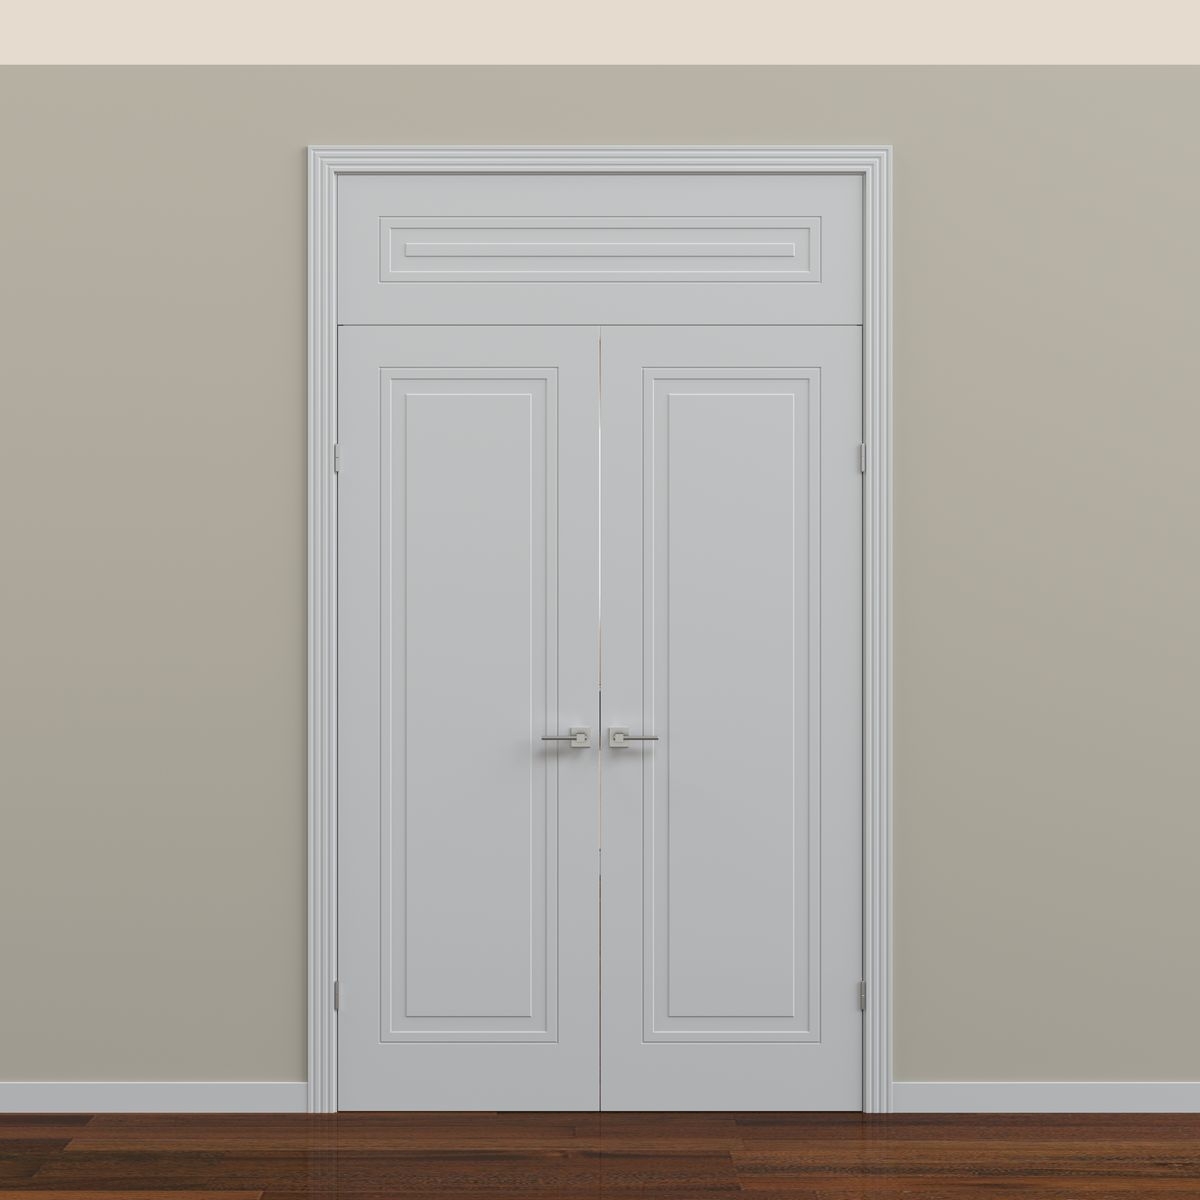 Двойная распашная дверь с фрамугой